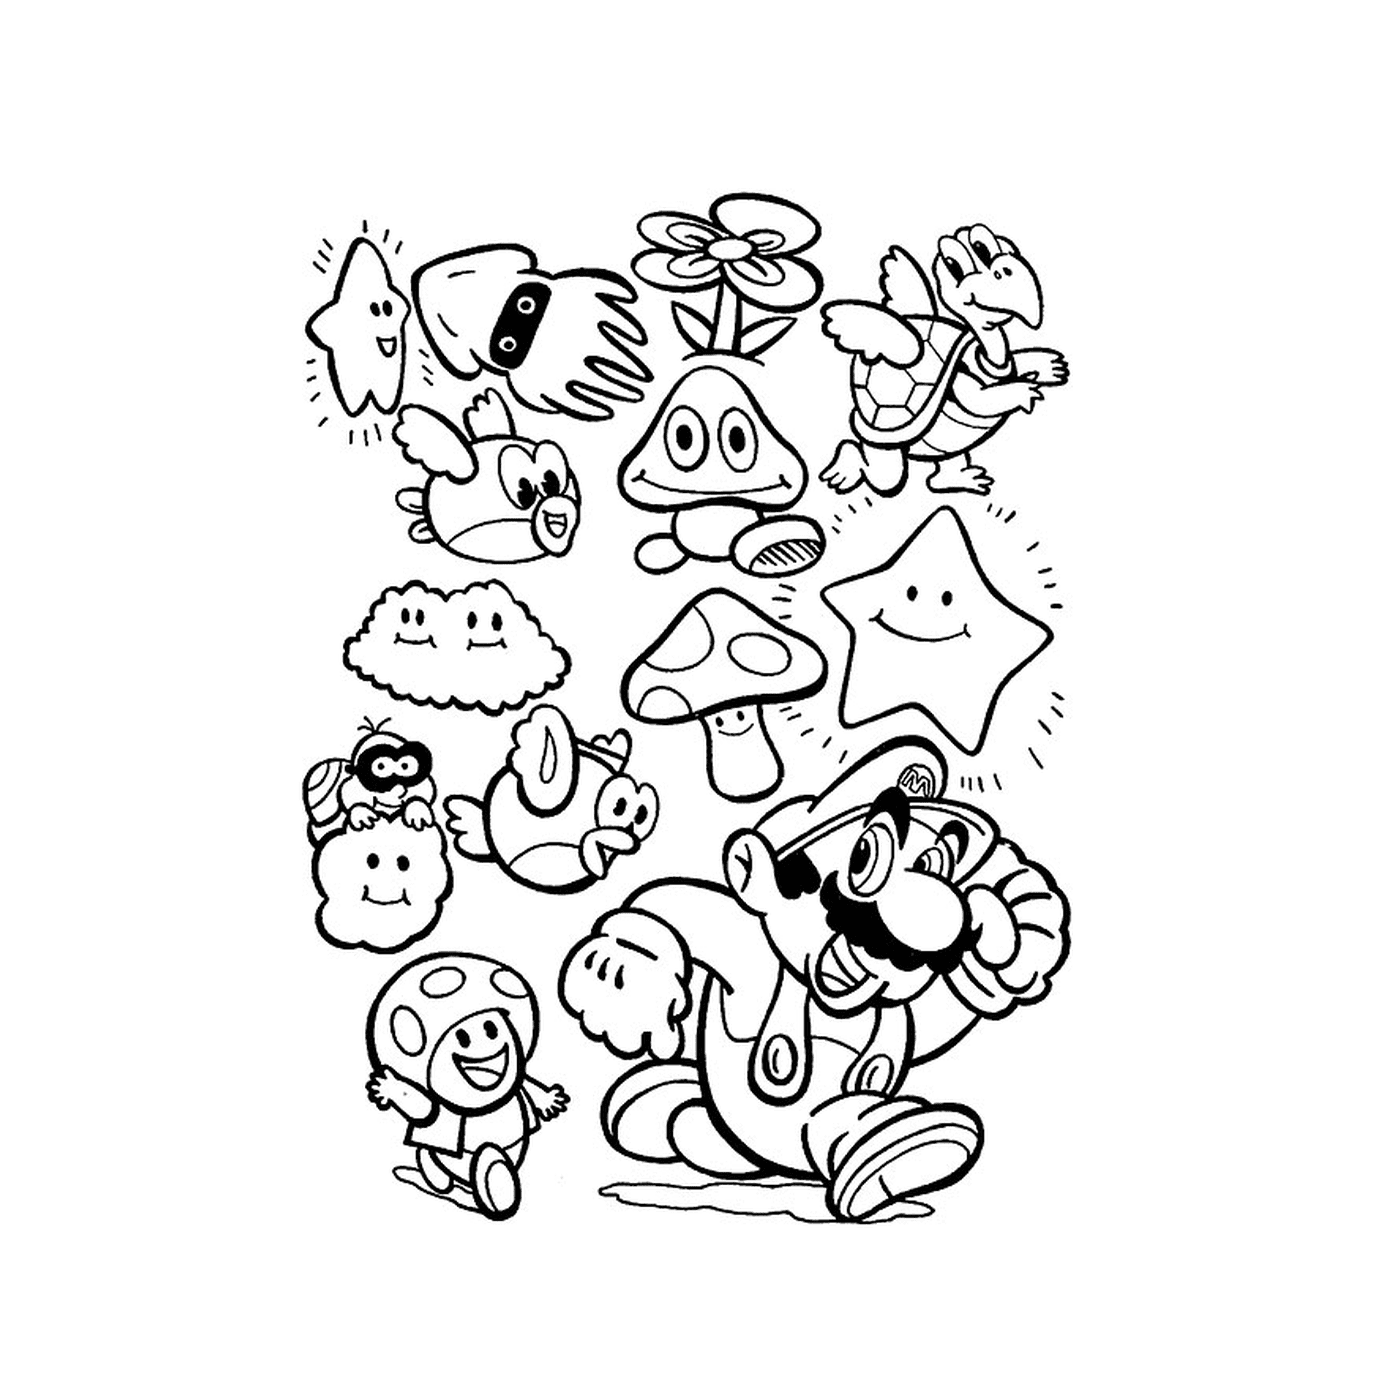  Um grupo de personagens de desenhos animados desenhados juntos 